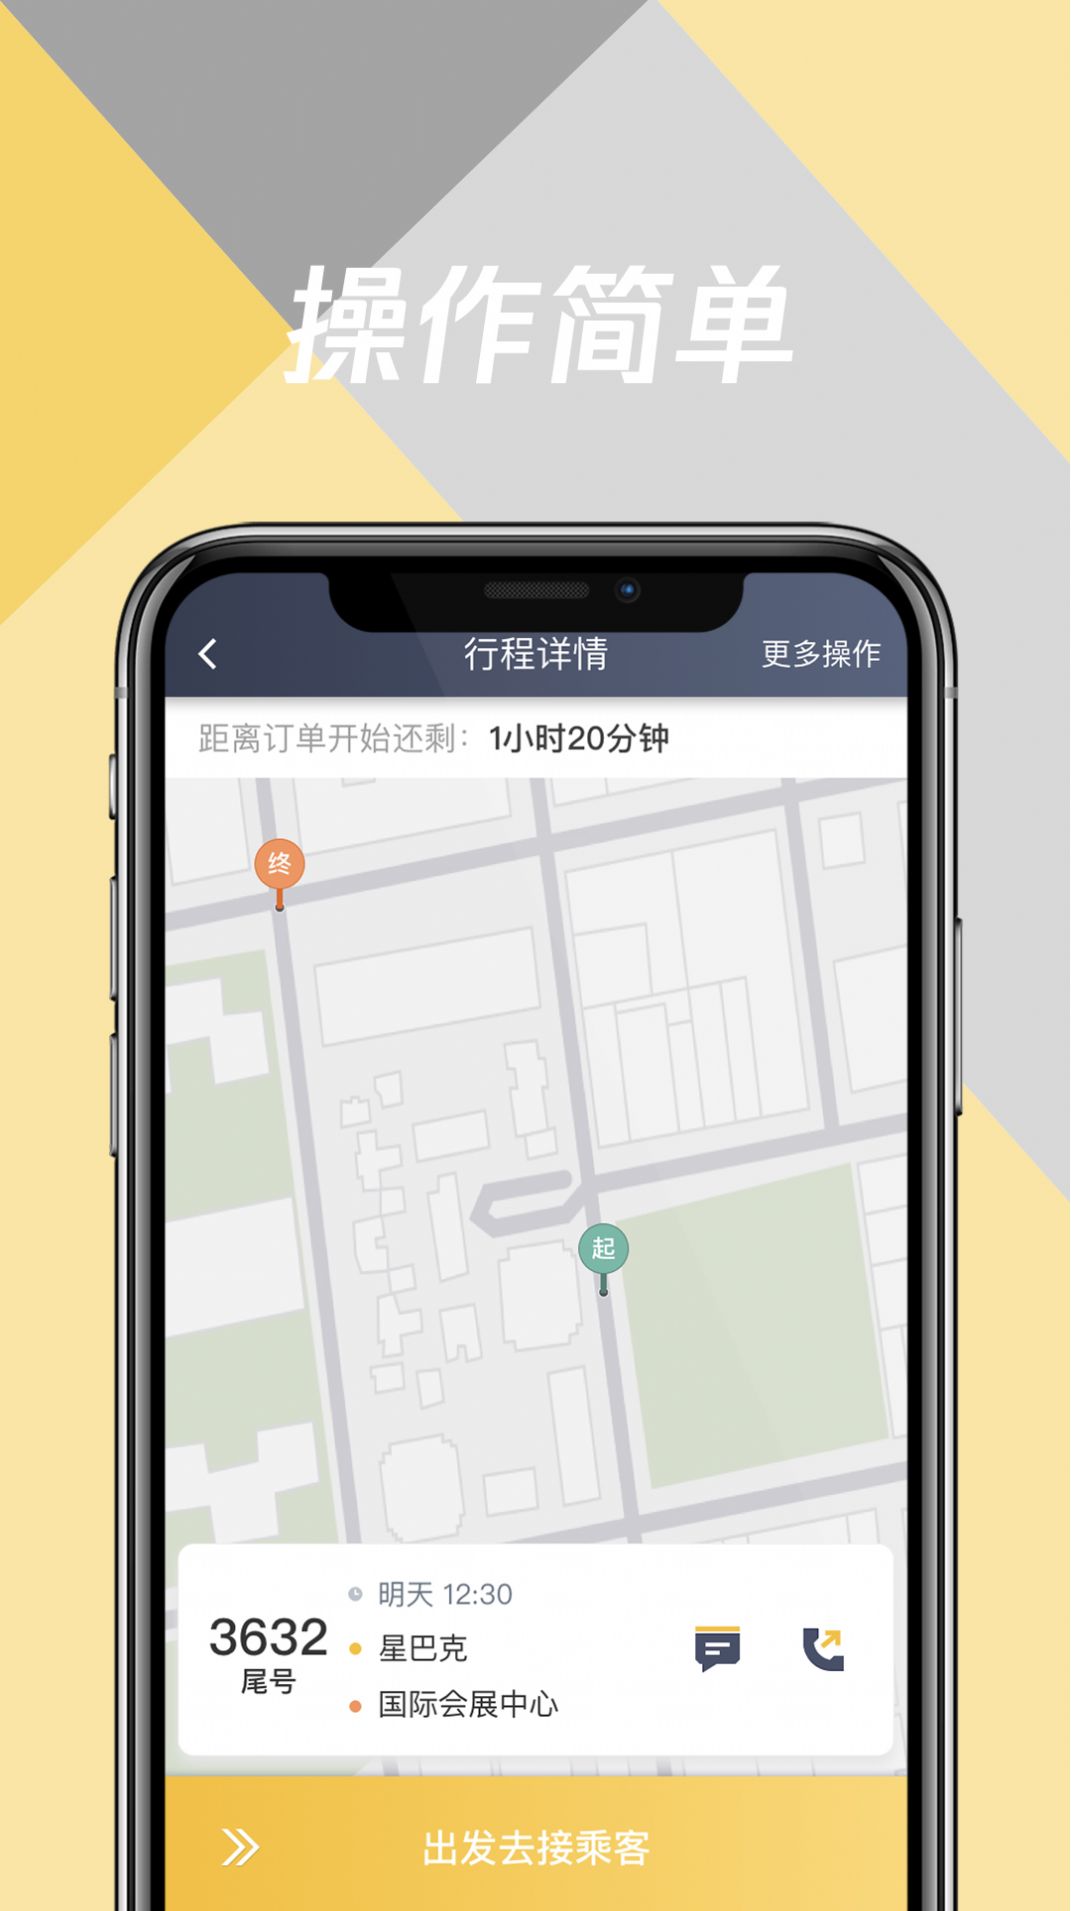 环旅出行乘客端app最新版 v5.50.0.0002